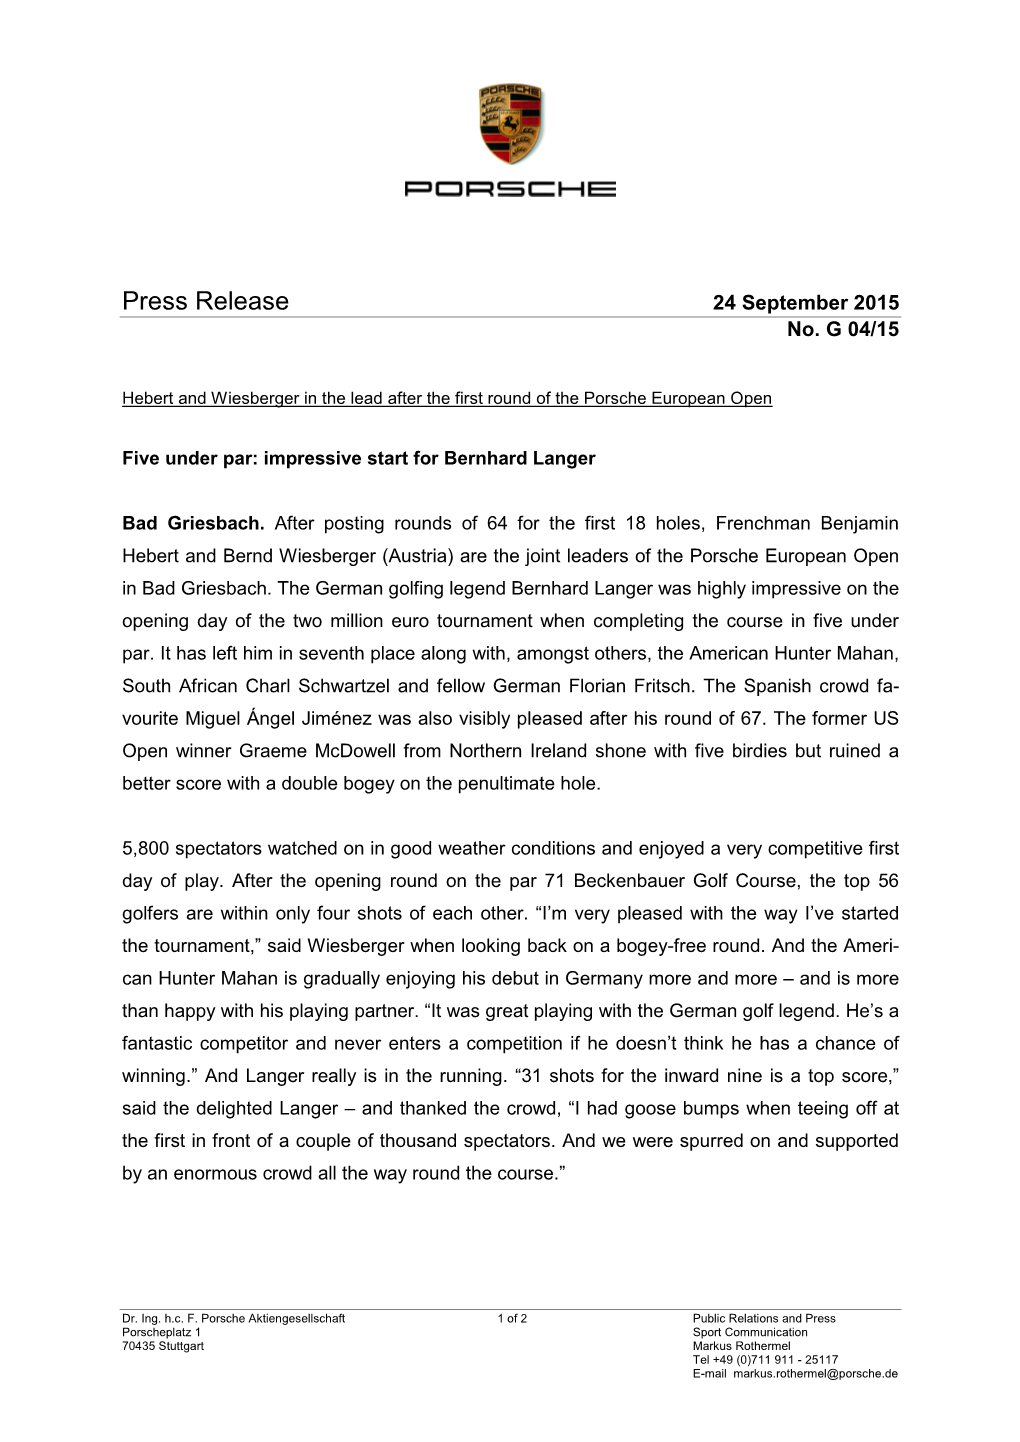 Press Release 24 September 2015 No